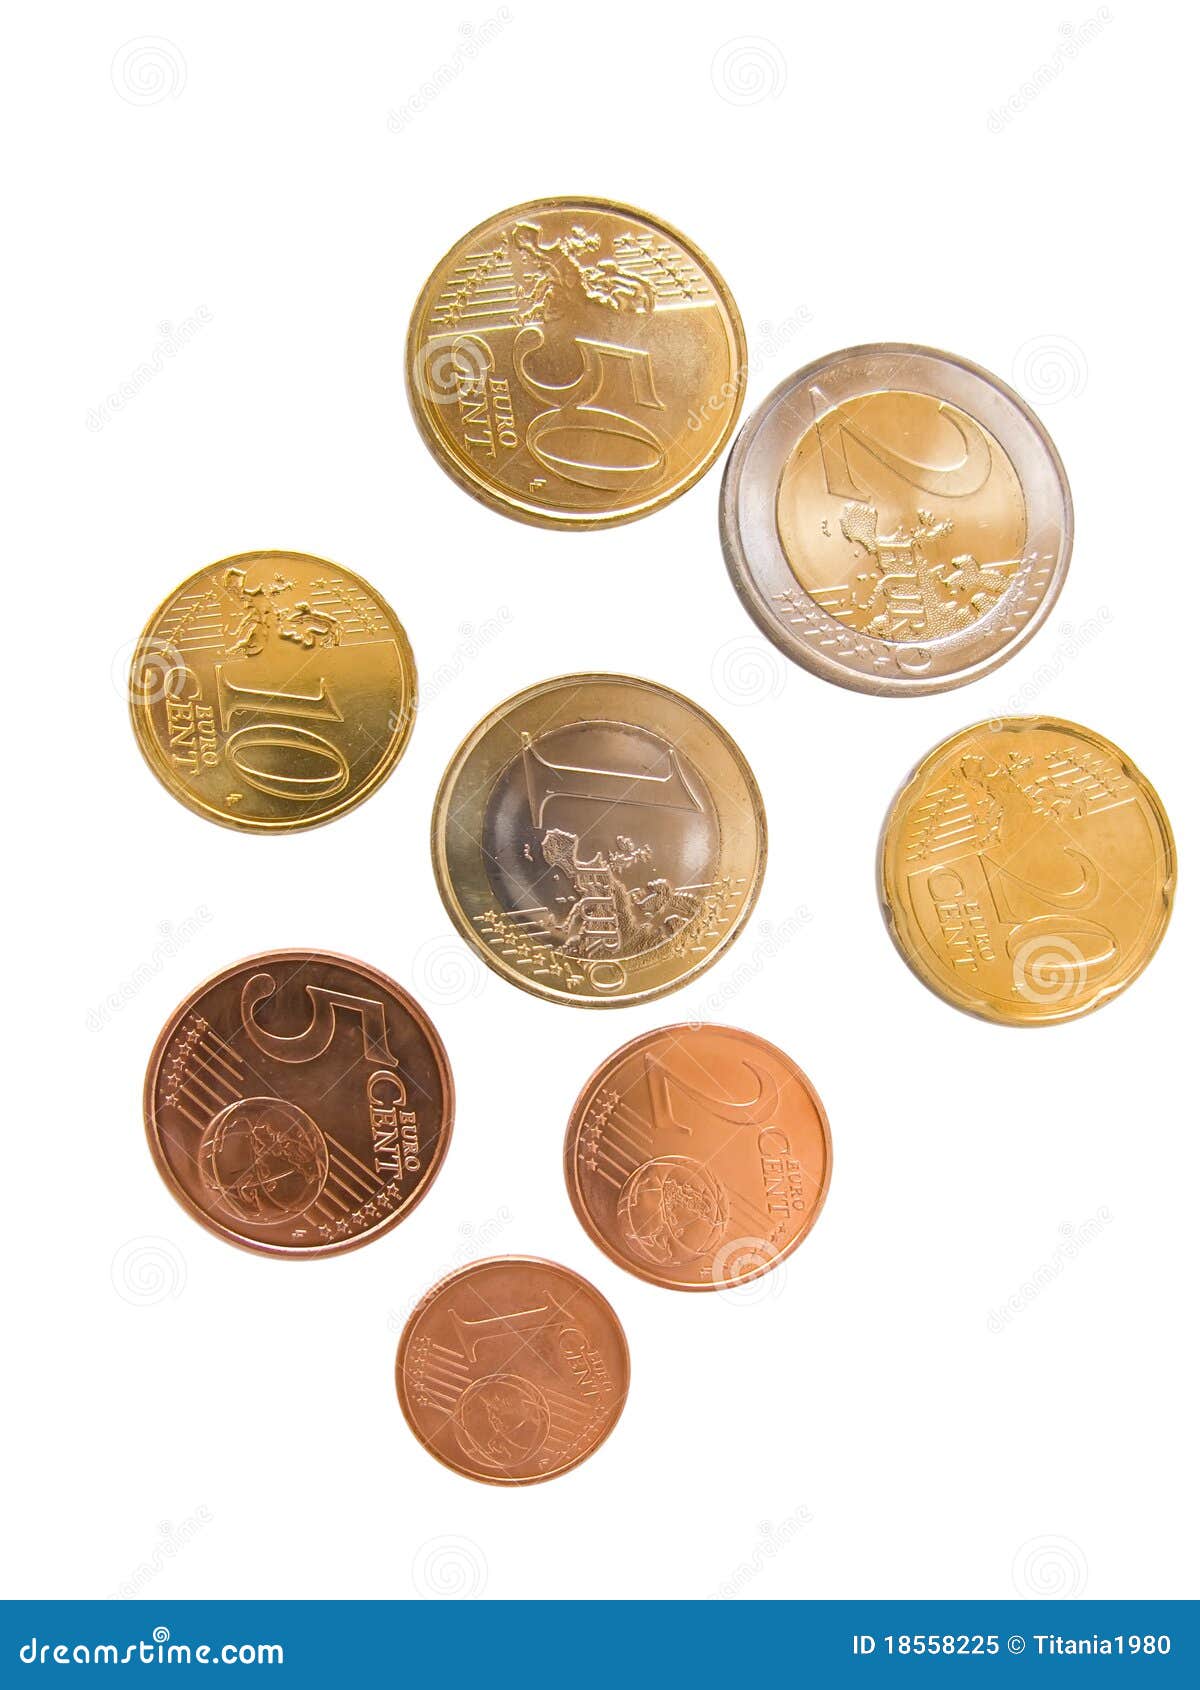 responder Dos grados Enfadarse Todas las monedas del euro imagen de archivo. Imagen de monedas - 18558225